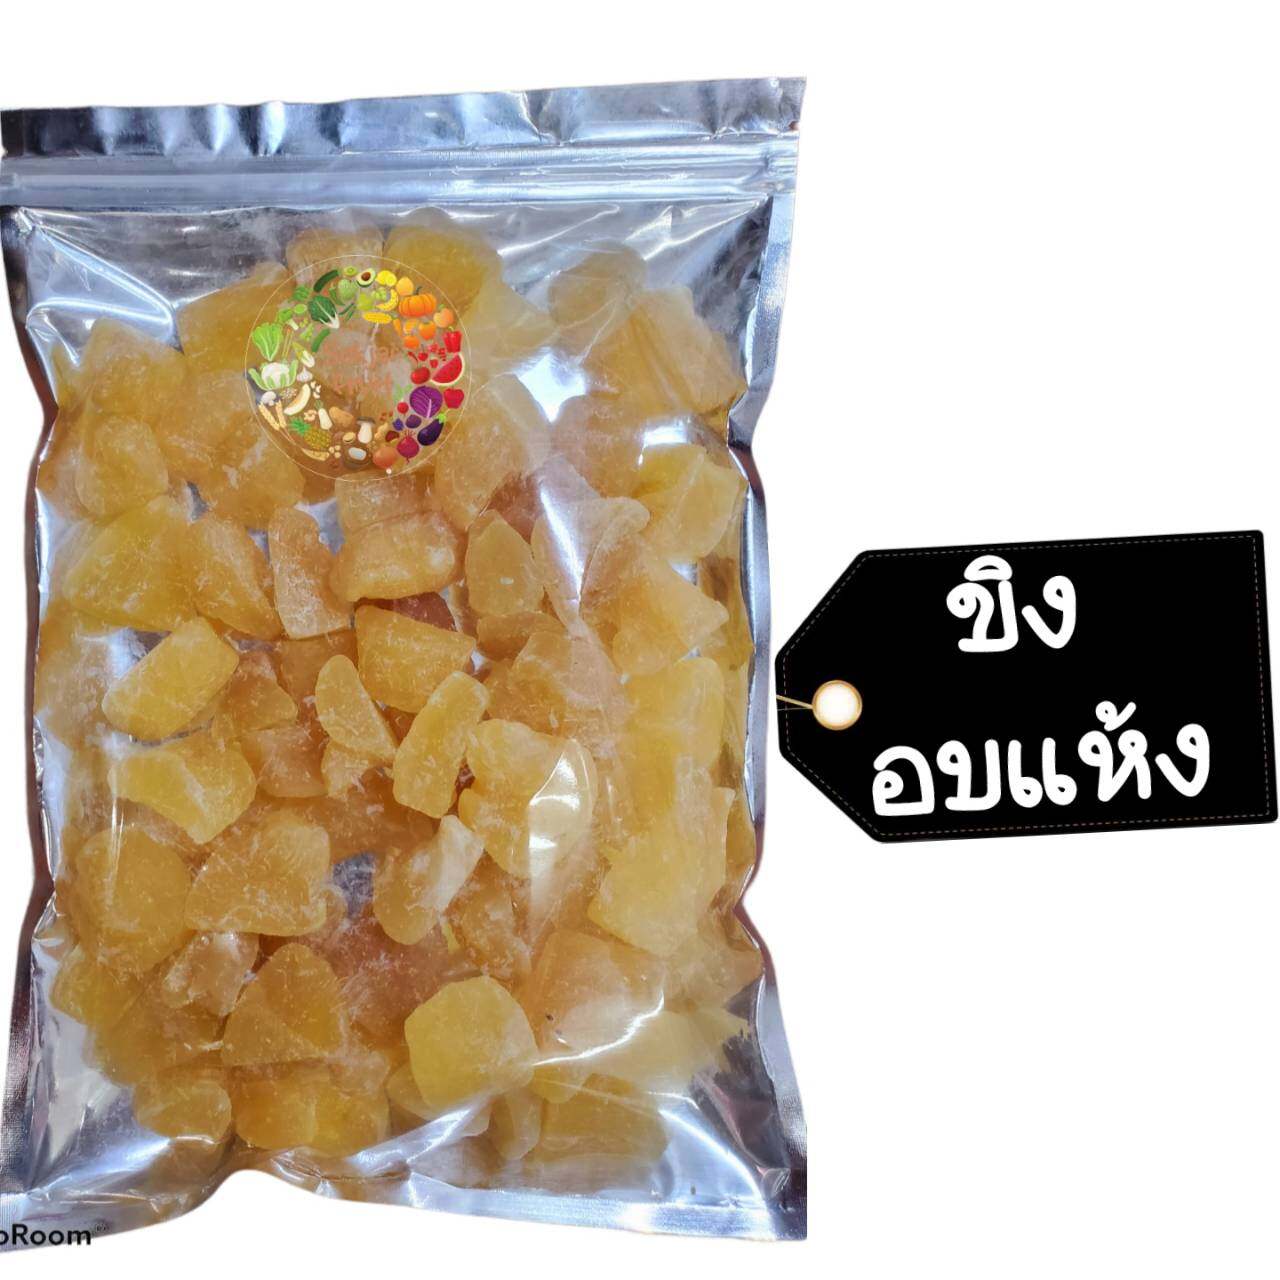 ขิง แช่อิ่ม 250 กรัม  - Crystallized Ginger 250 g  - Dried fruit ผลไม้ อบแห้ง ขนมไทย ขนม OTOP บ๊วย ผลไม้อบแห้ง บ๊วย ผลไม้อบแห้ง